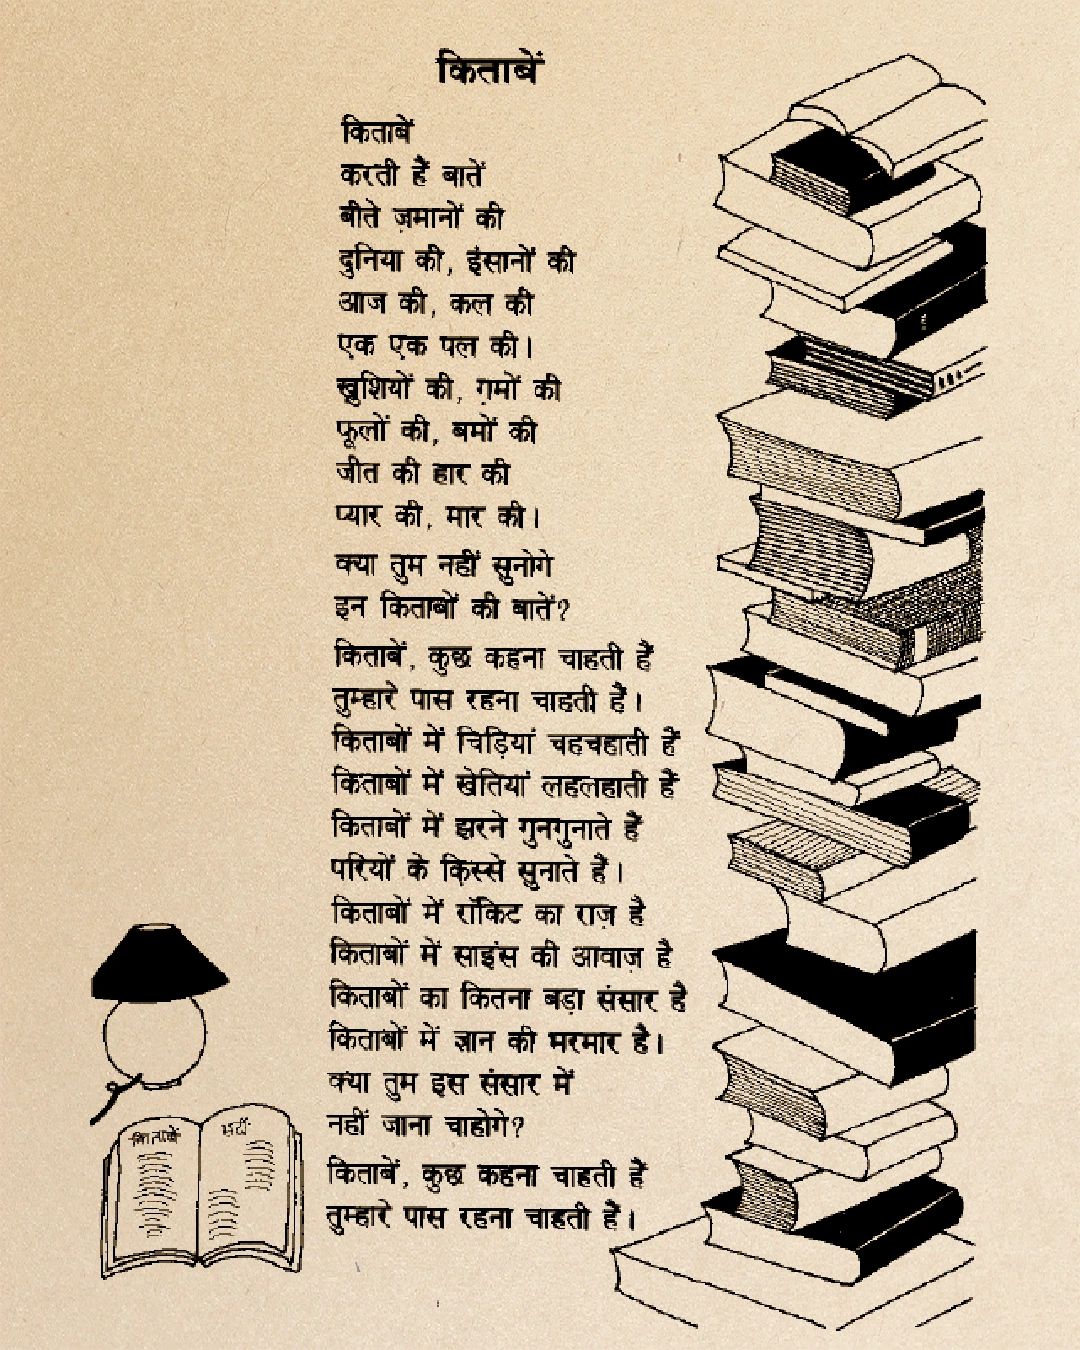 Safdar hashmi poems